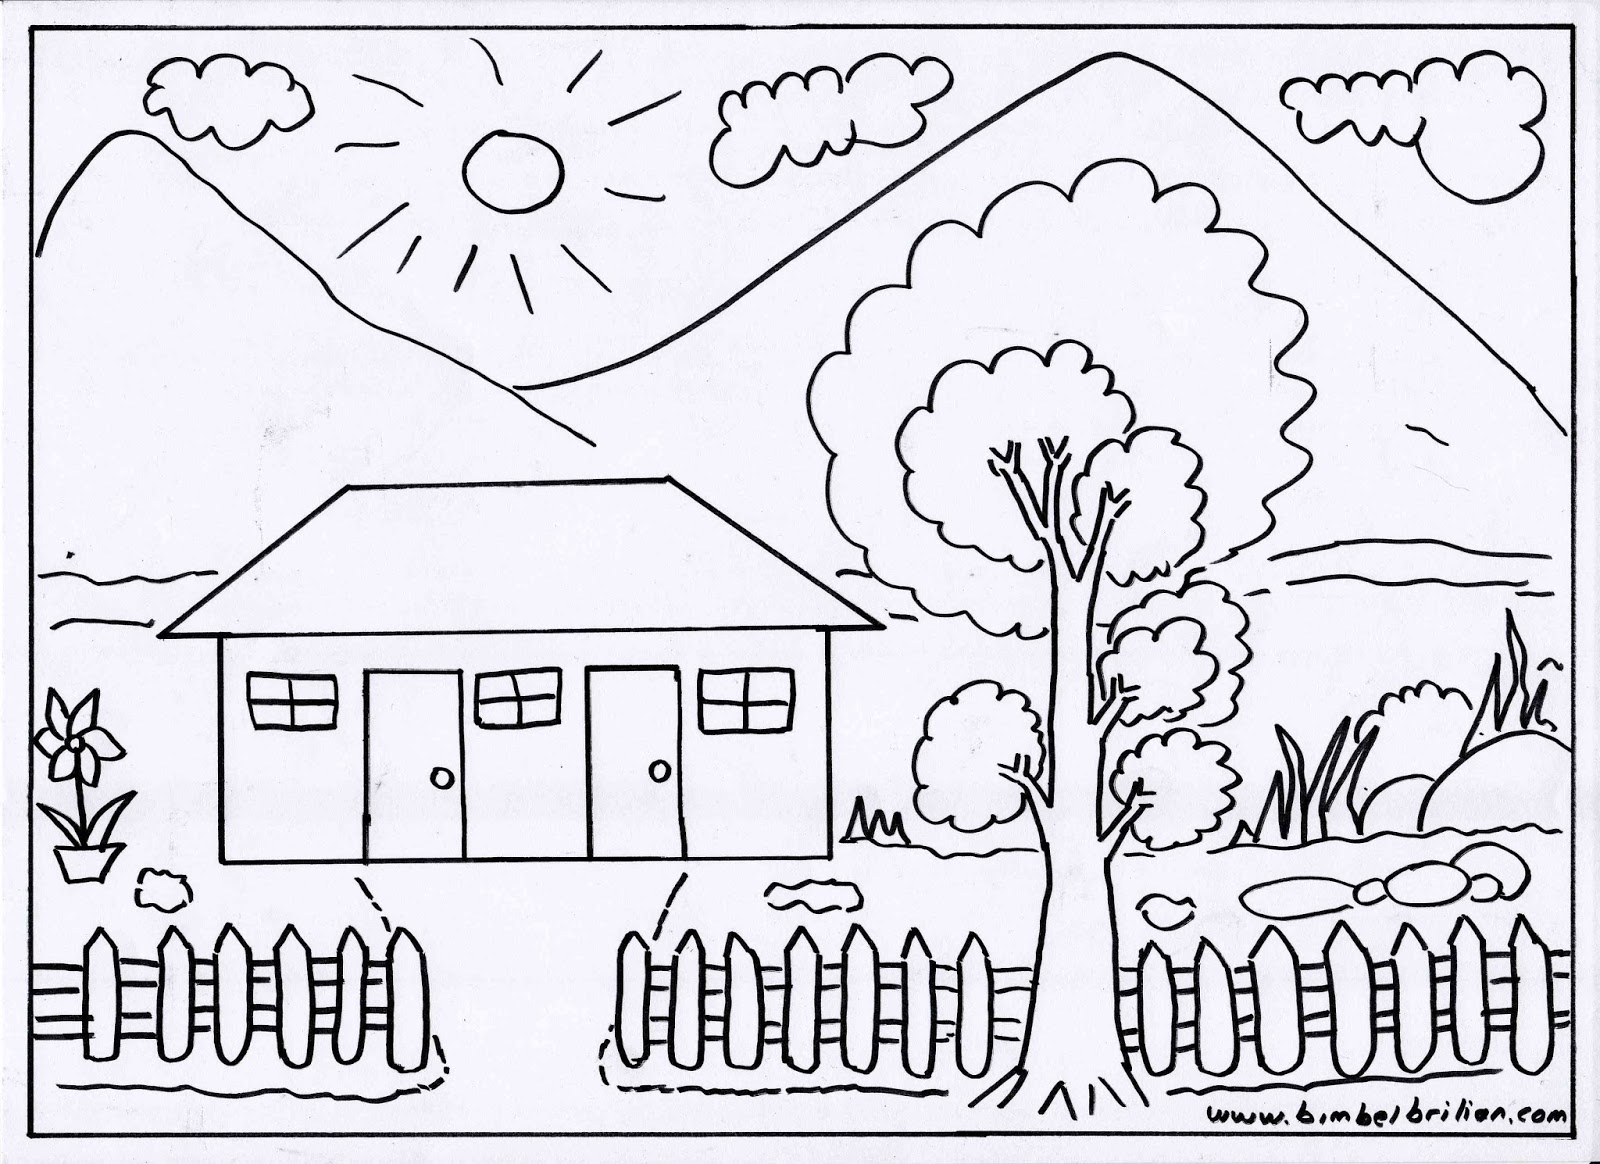  Gambar Rumah Sederhana Hitam Putih gambar alam hitam 